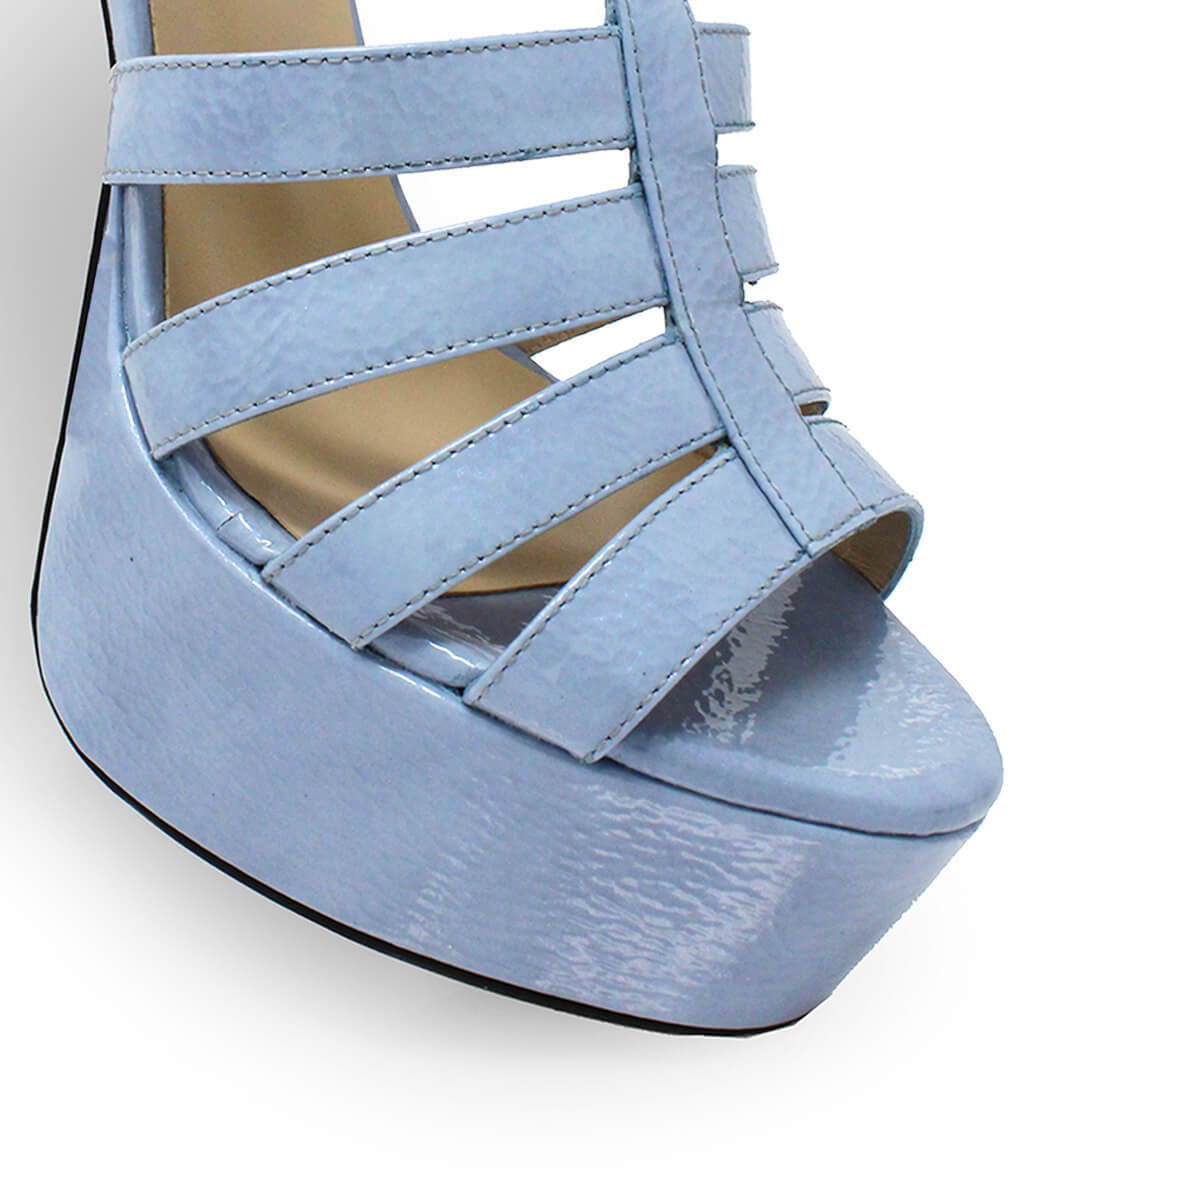 ROMI 135 - Charol Azul Claro Regina Romero Zapato Sandalia Plataforma Tacon Alto Para Dama en Piel